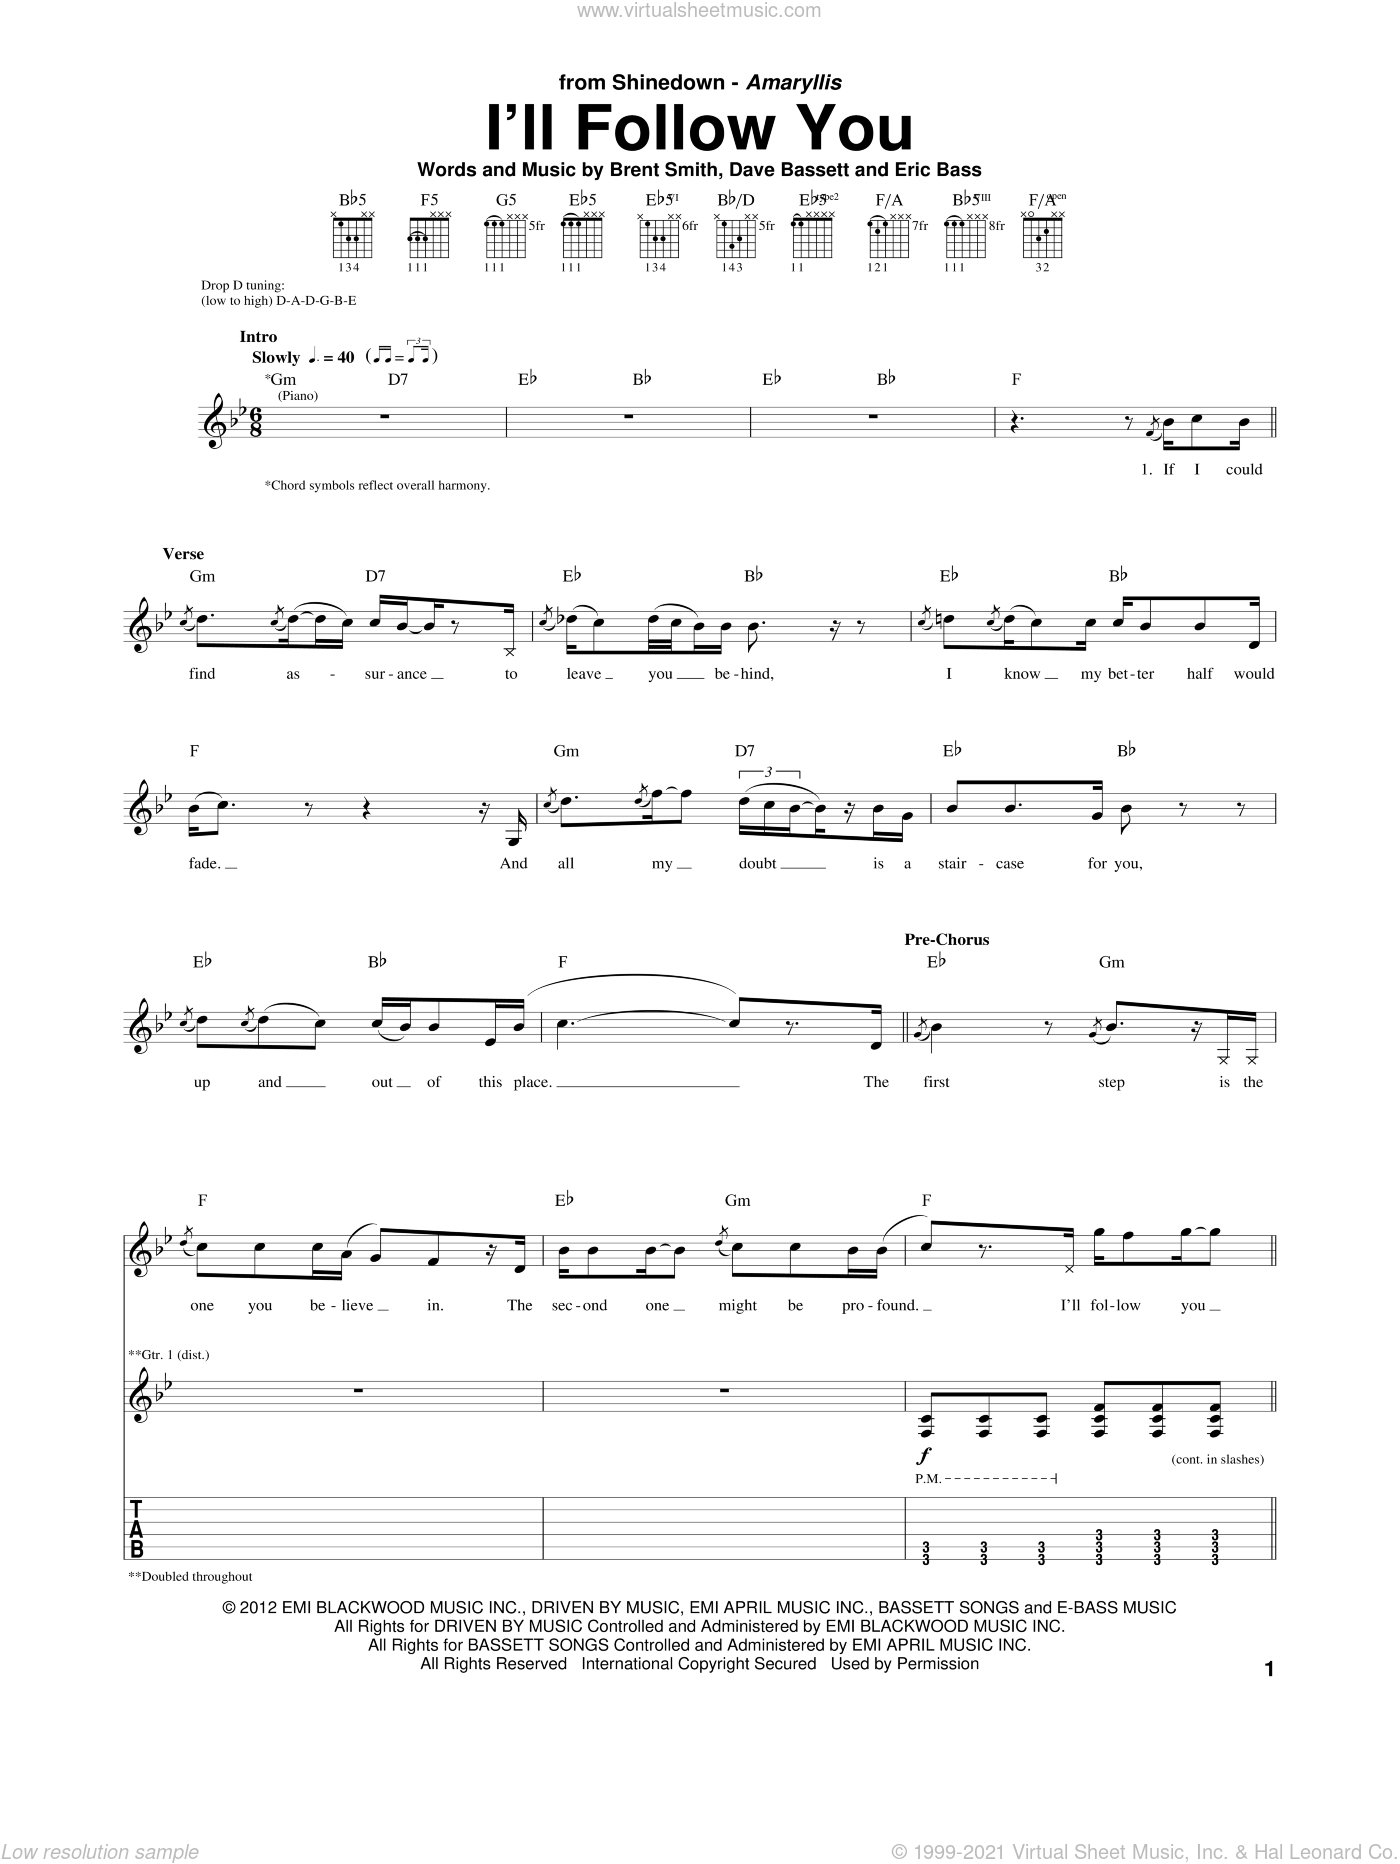 Shinedown - I'll Follow You sheet music for guitar (tablature)